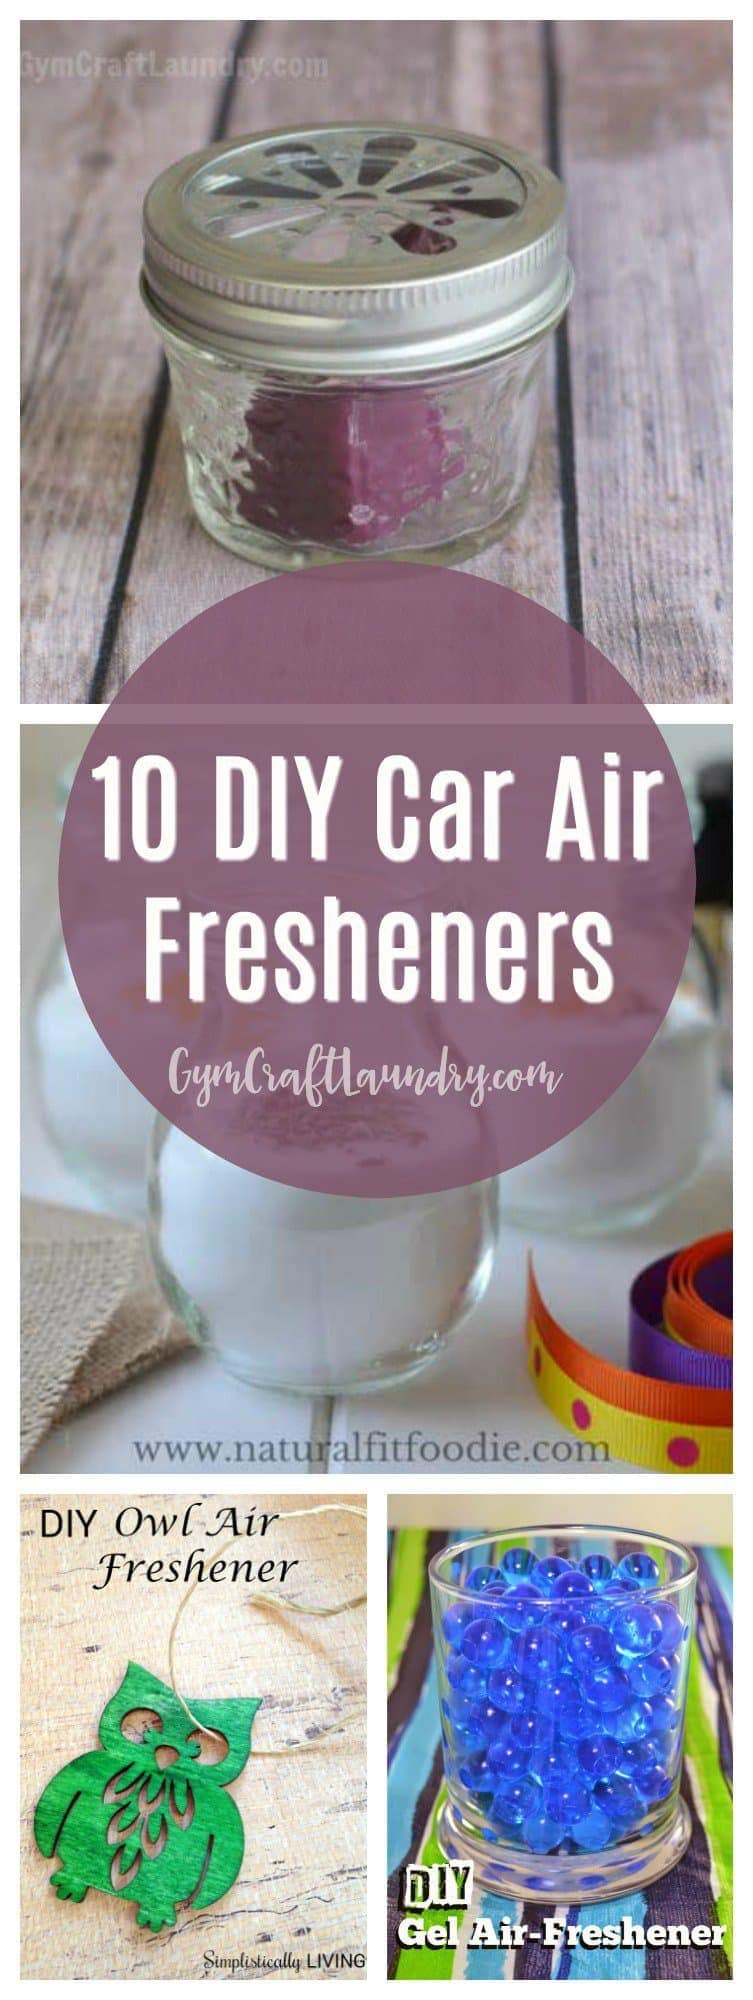 How to Make Homemade Car Air Fresheners